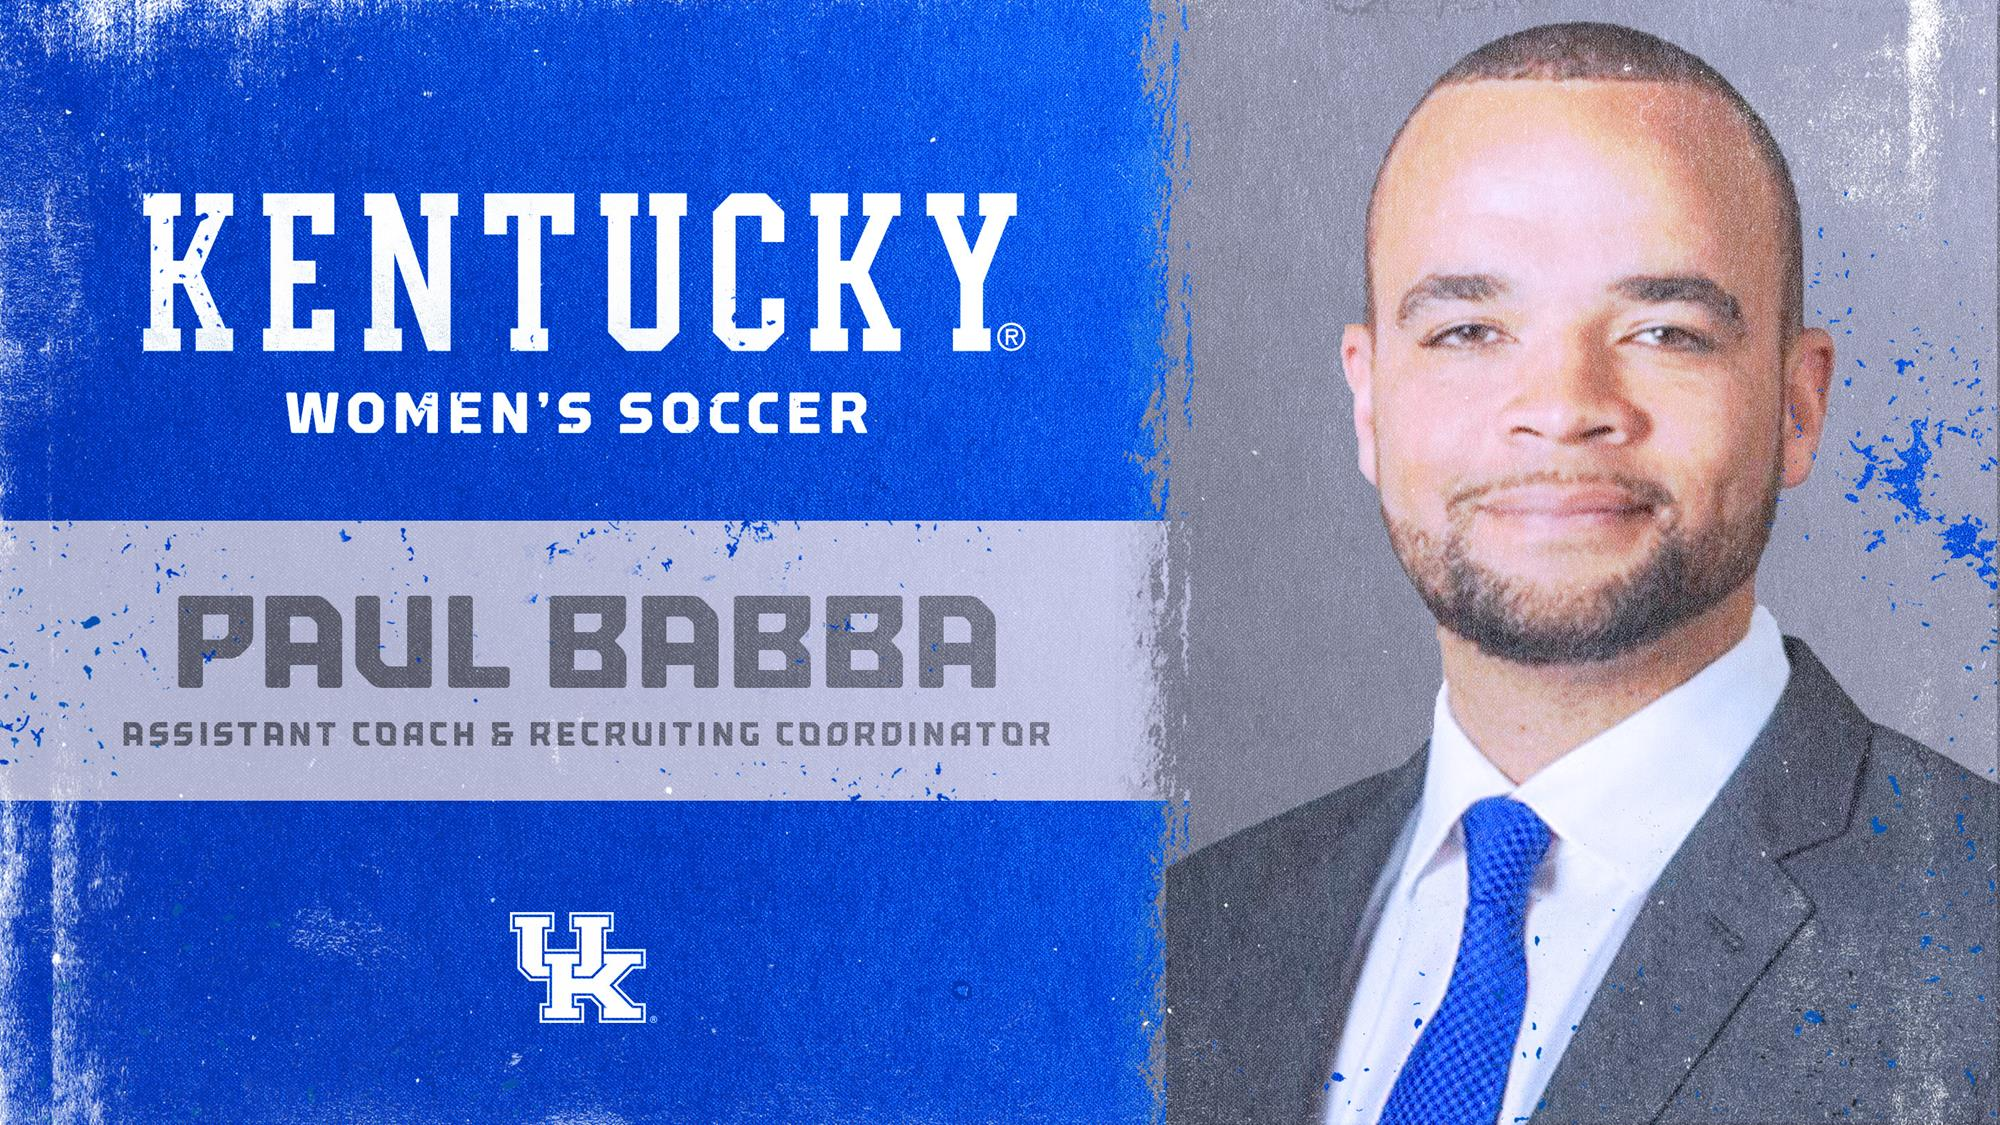 Paul Babba Named Kentucky Women’s Soccer Assistant Coach, Recruiting Coordinator